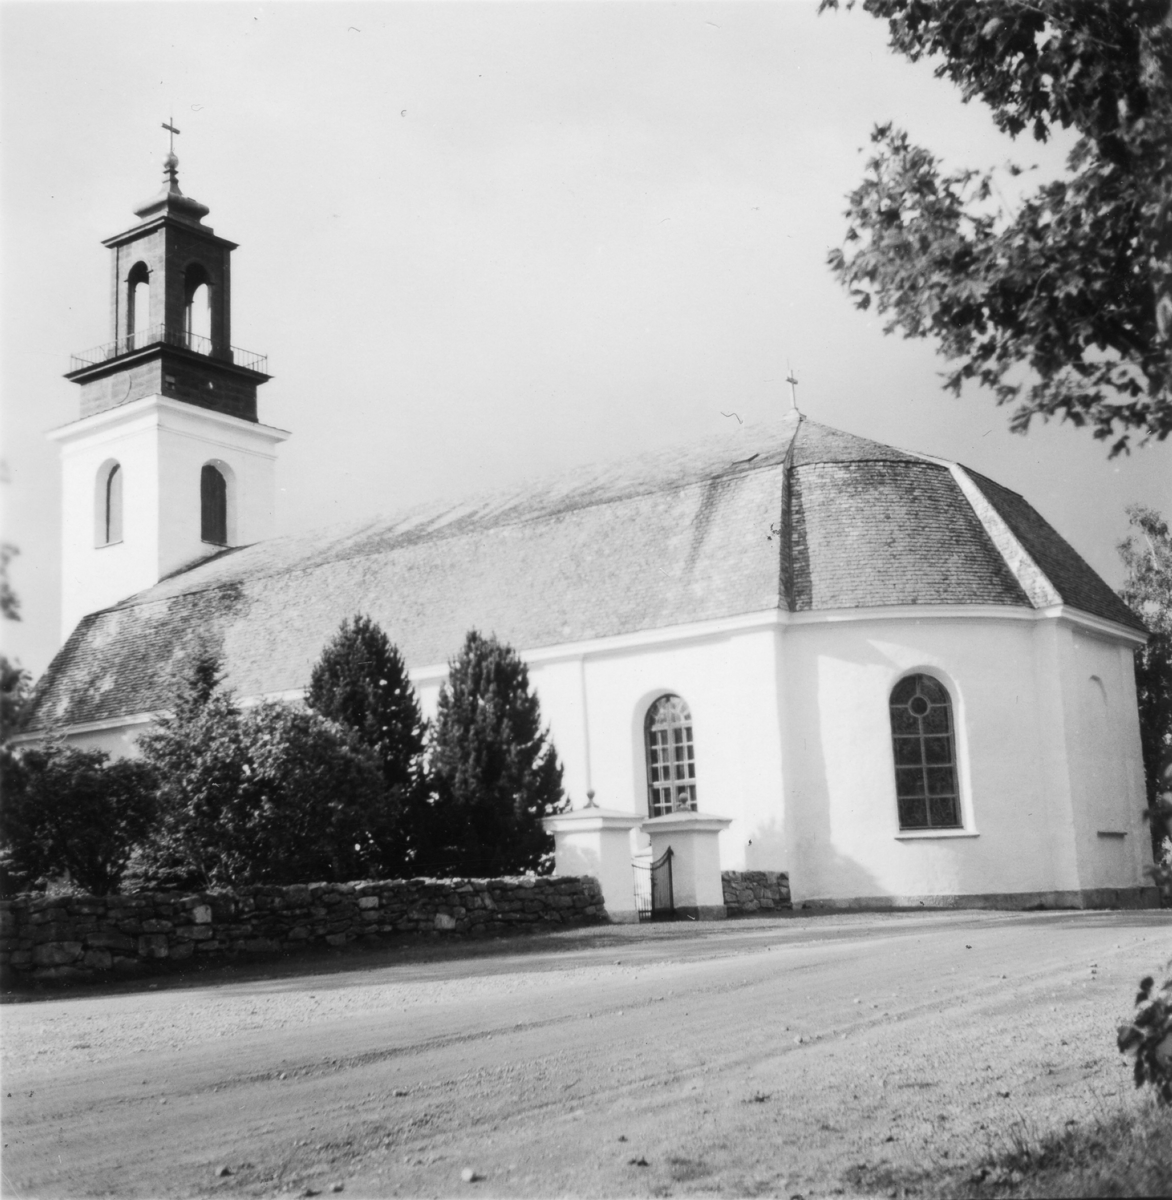 Ölmes kyrka